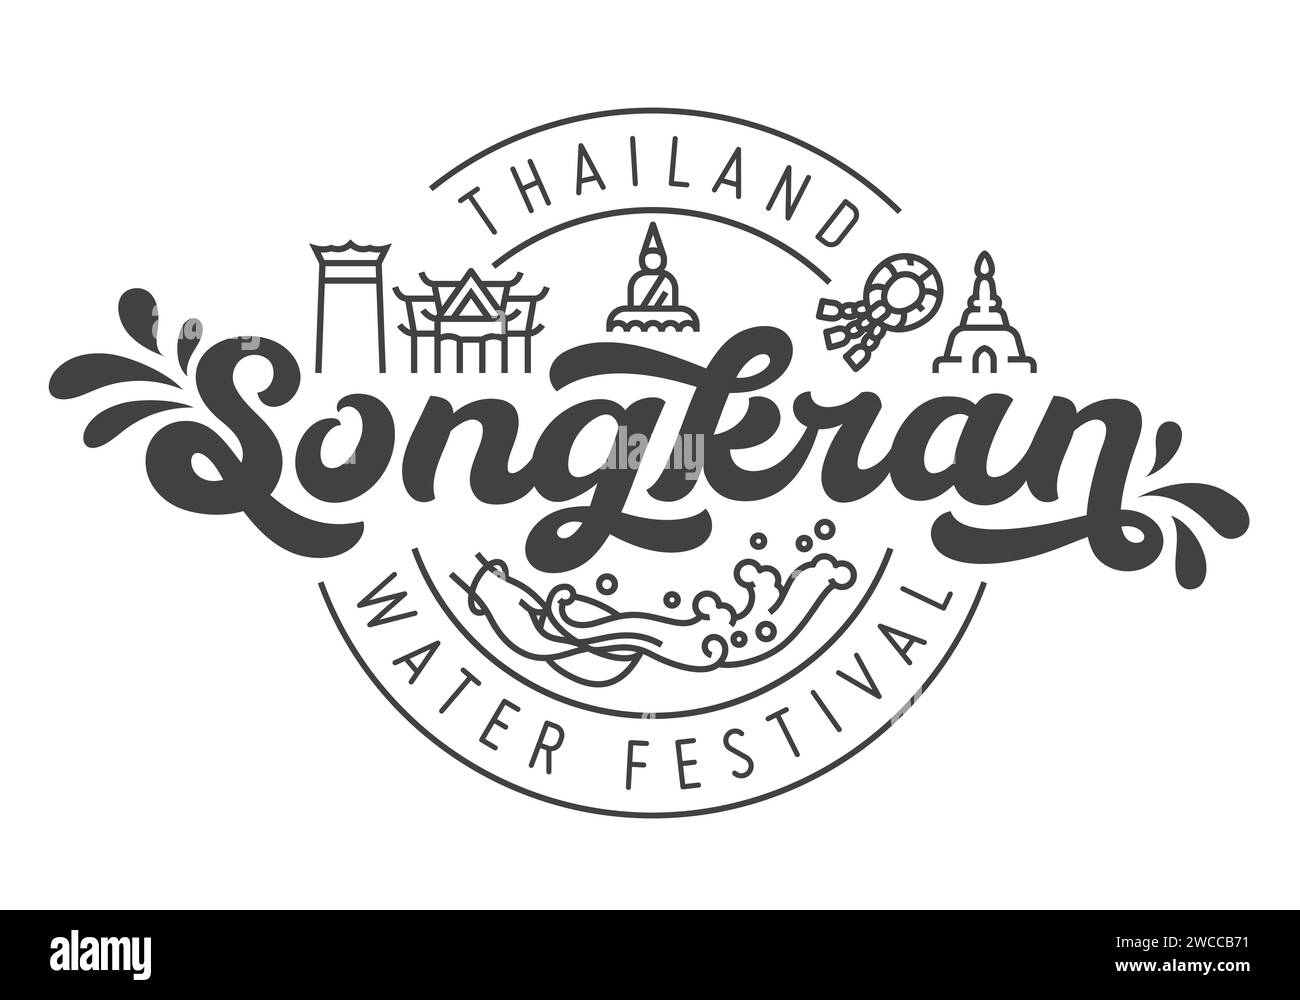 Songkran thailand Wasserfestival Logotypendesign mit linearem Symbol des thailändischen Symbols: buddha, Tempel, Blumengirlande, Pagode, Riesenschaukel und Wasserspritzer Stock Vektor